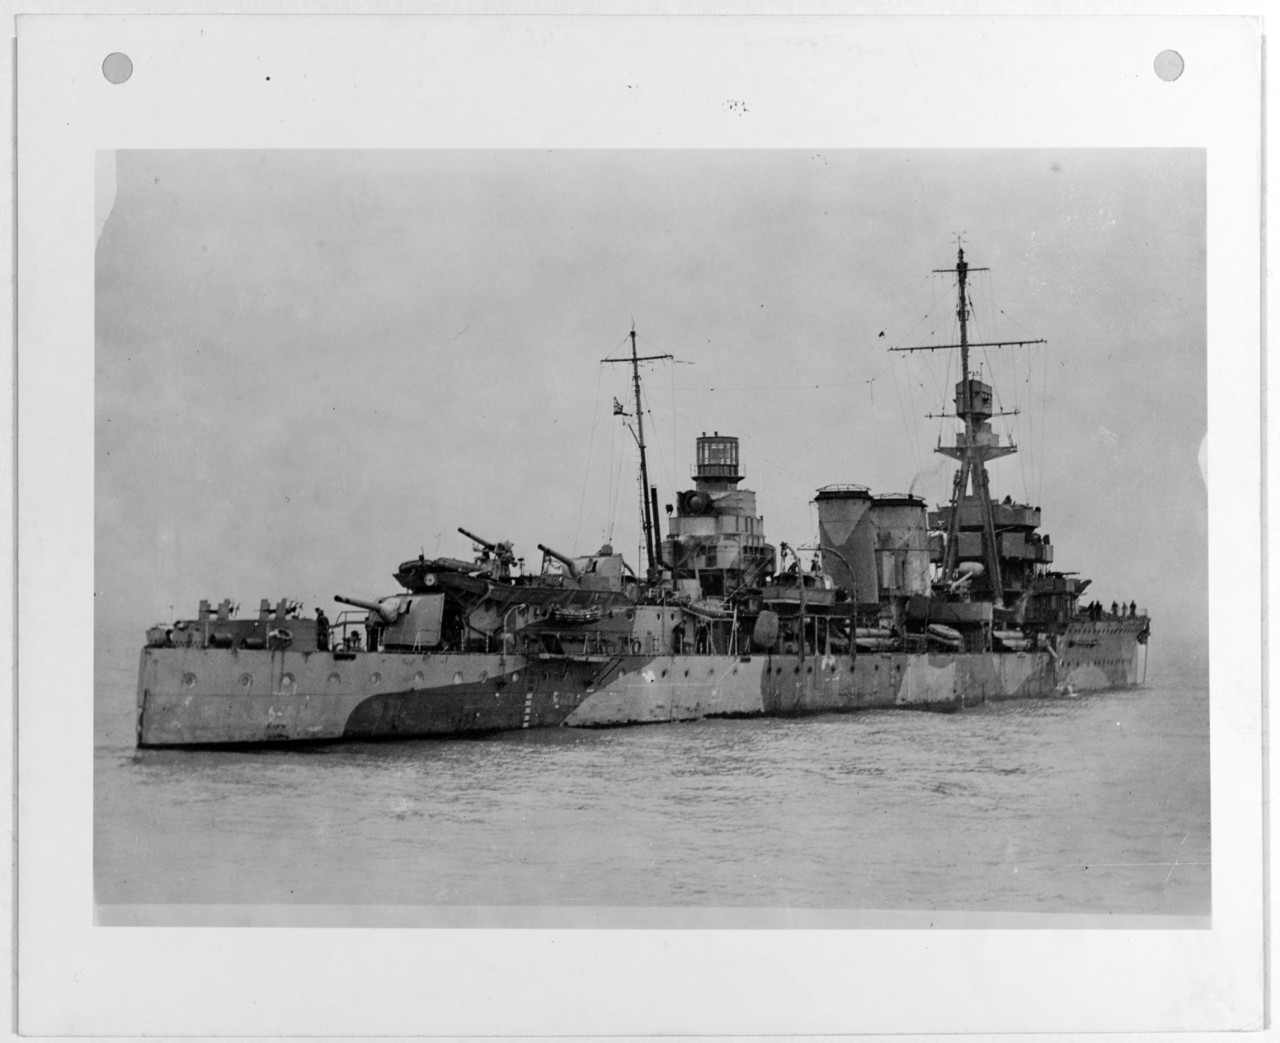 DAUNTLESS (British light cruiser, 1918-1946)